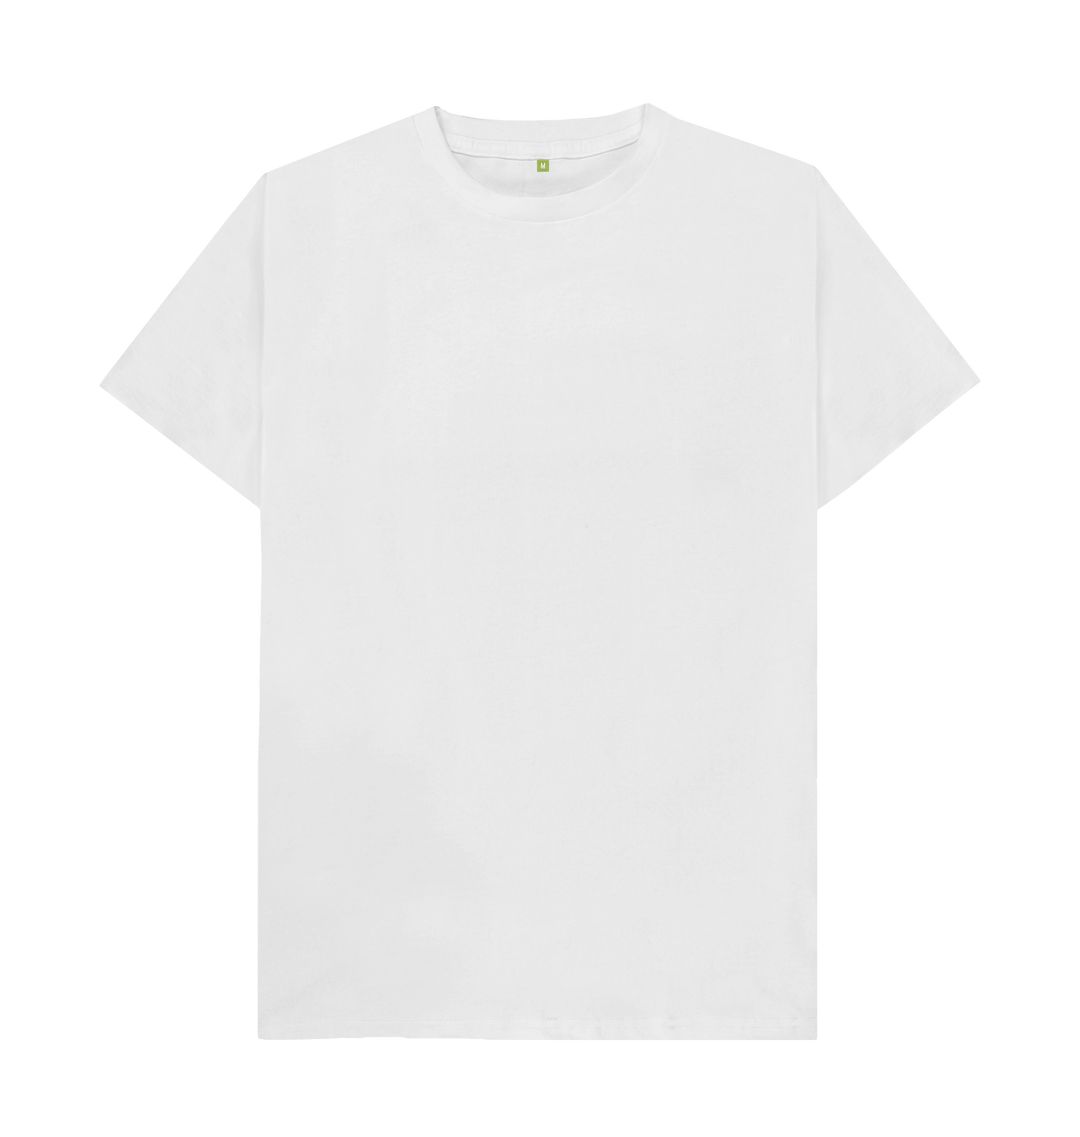 White Polzeath III Tshirt